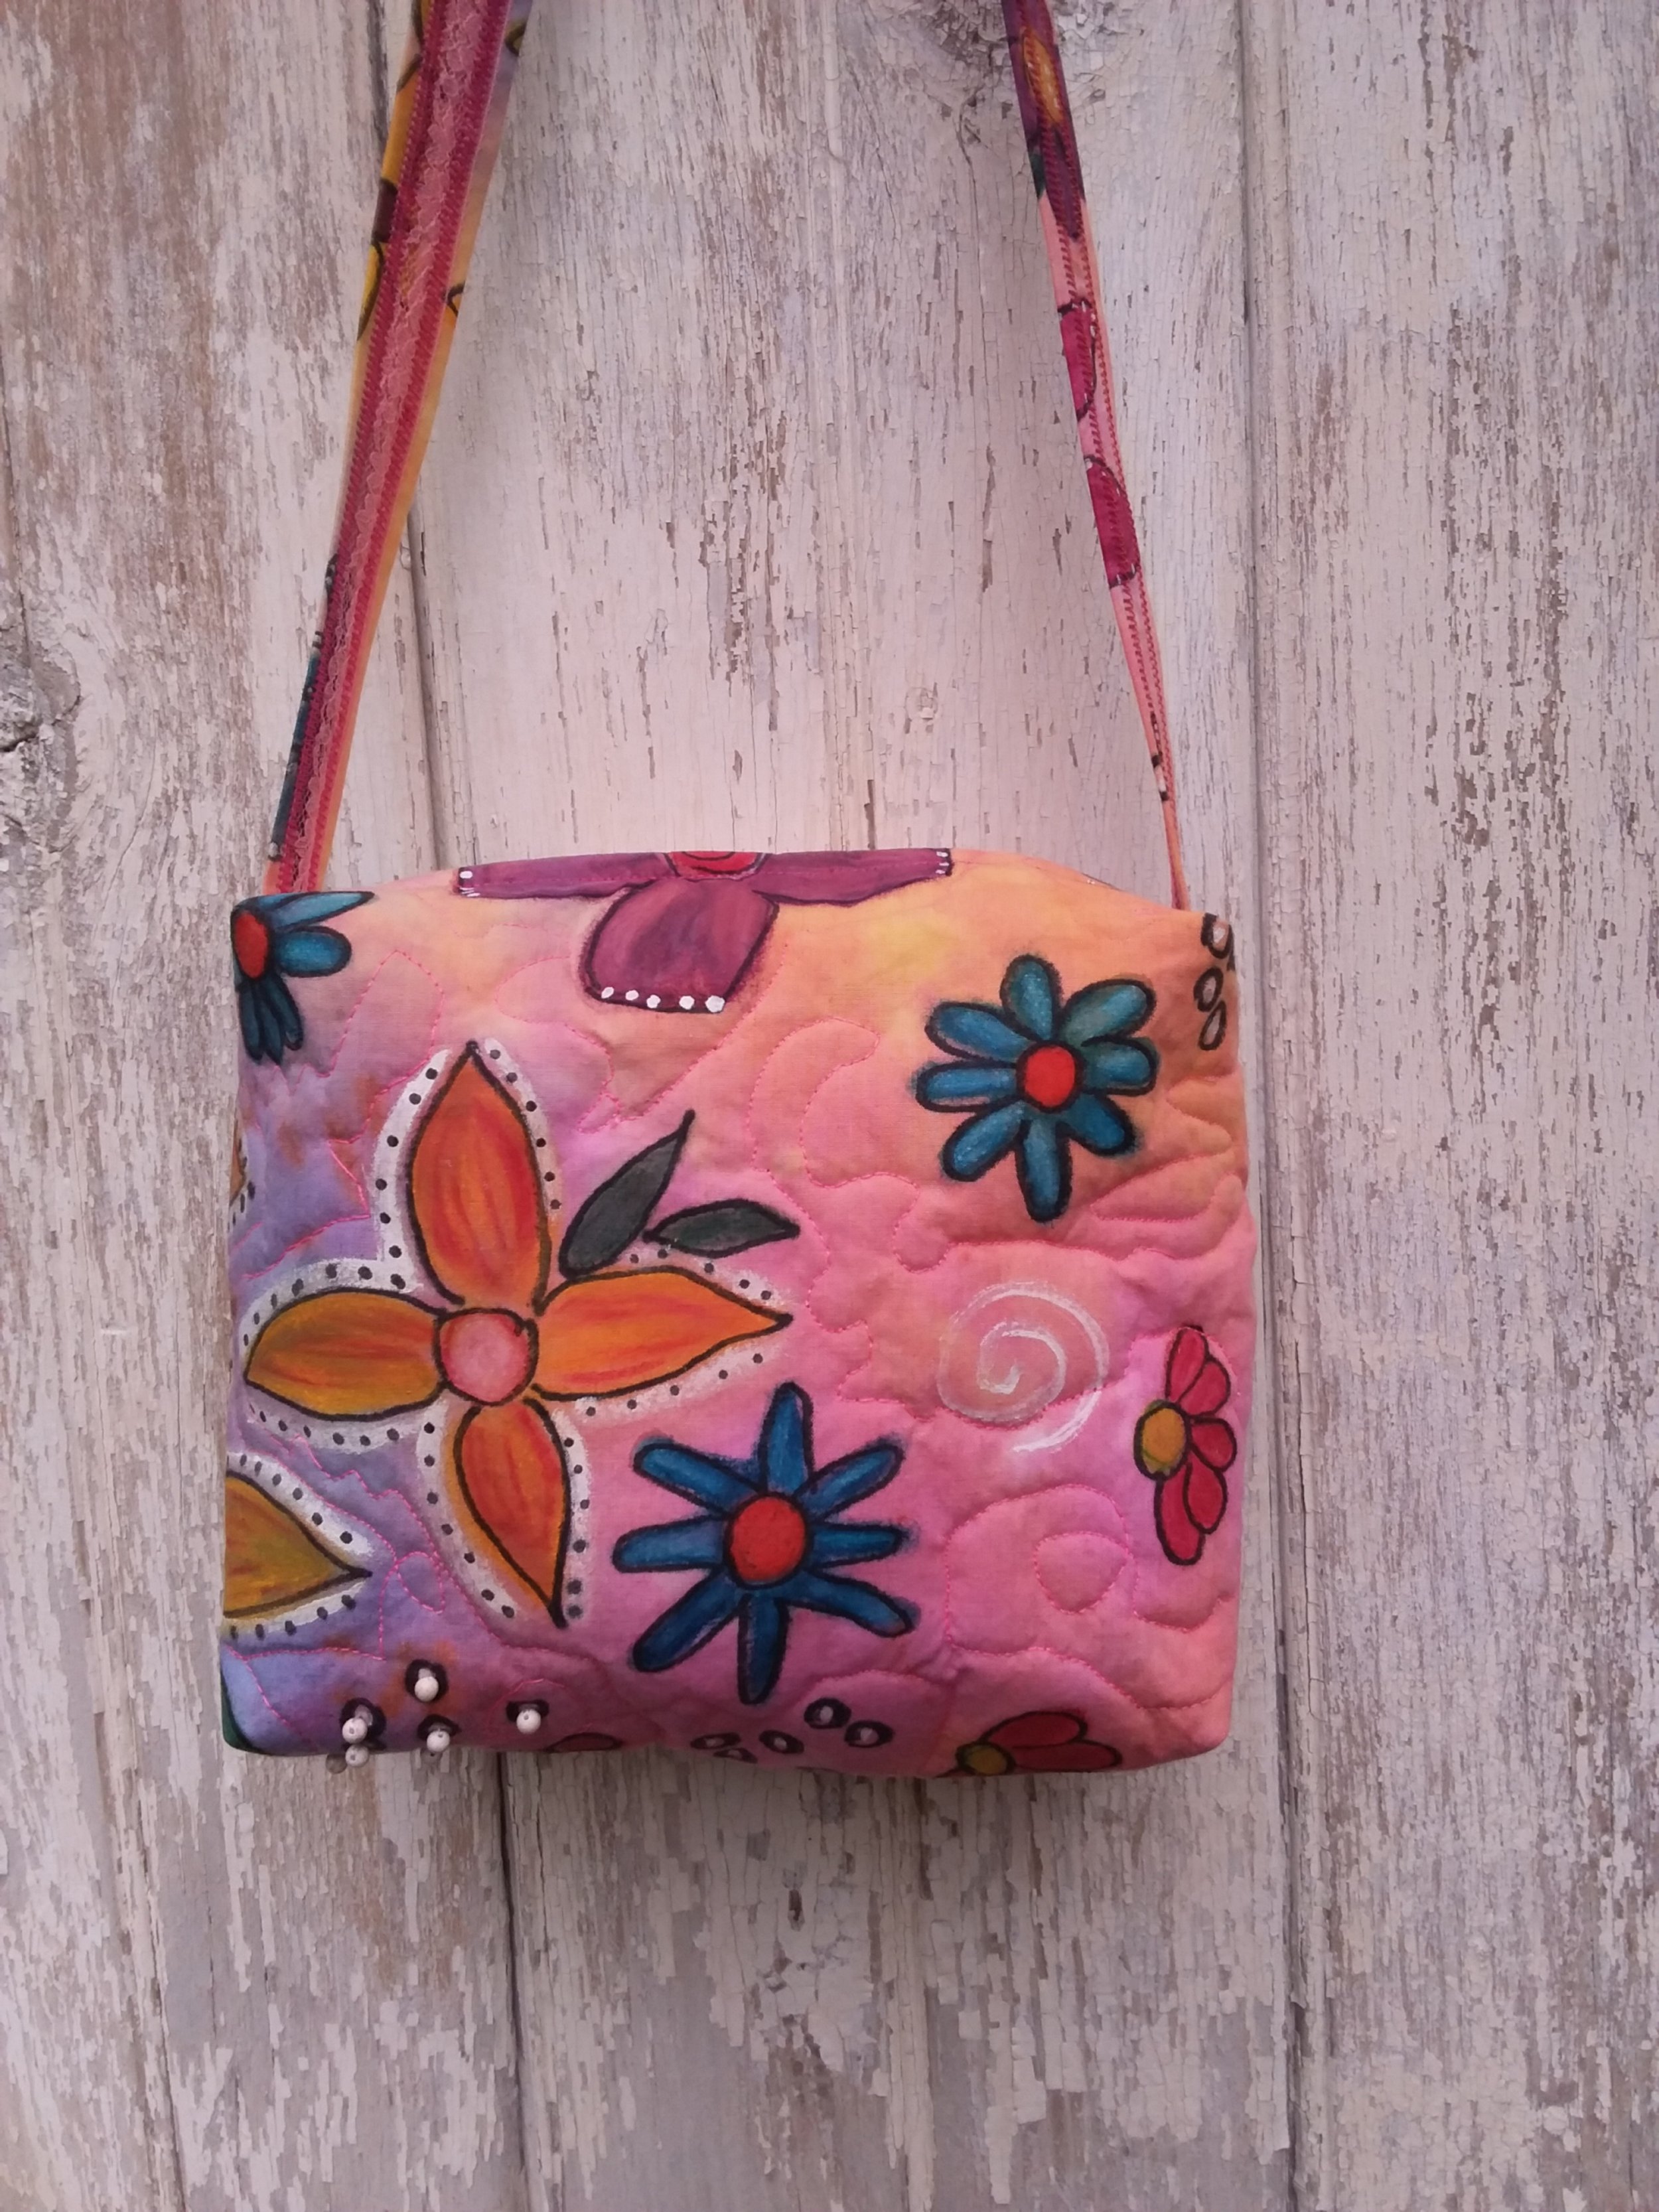 Vintage Embroidered Tote Bag Retro Ethnic Style Shoulder Bag - Temu